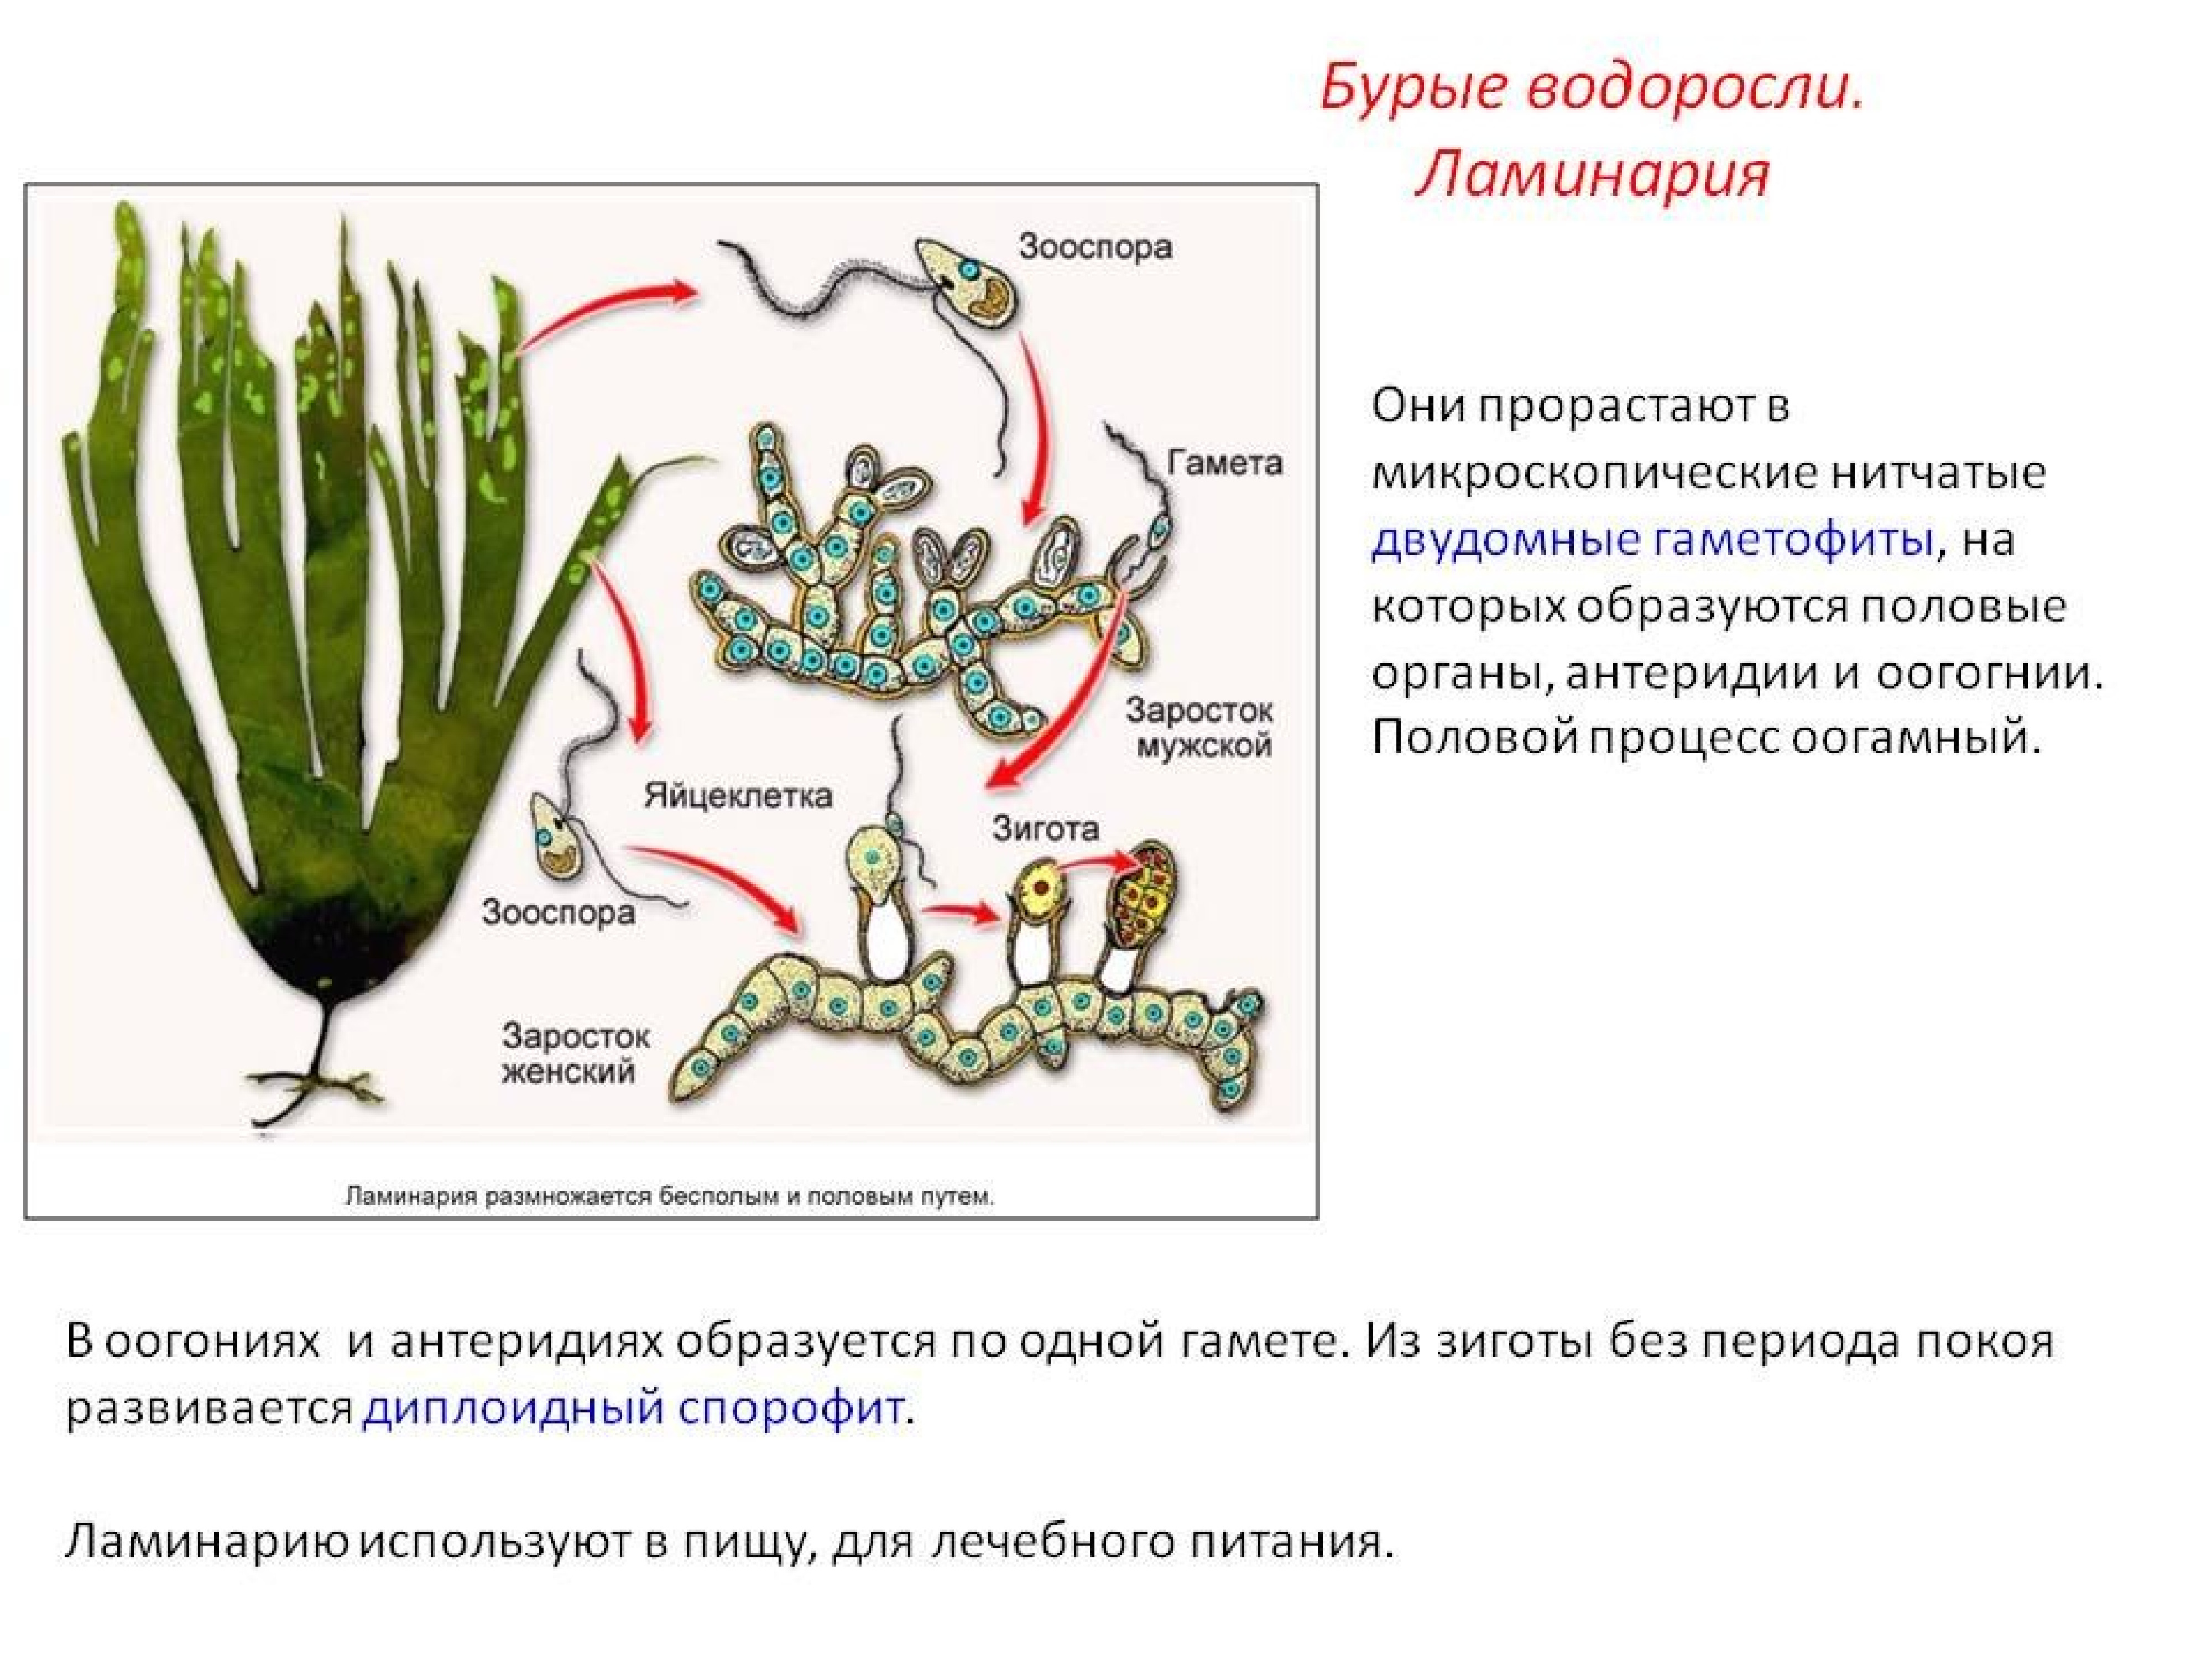 Что преобладает у водорослей. Цикл размножения бурых водорослей. Размножение бурых водорослей жизненный цикл. Процесс размножения бурых водорослей. Цикл развития бурых водорослей схема.